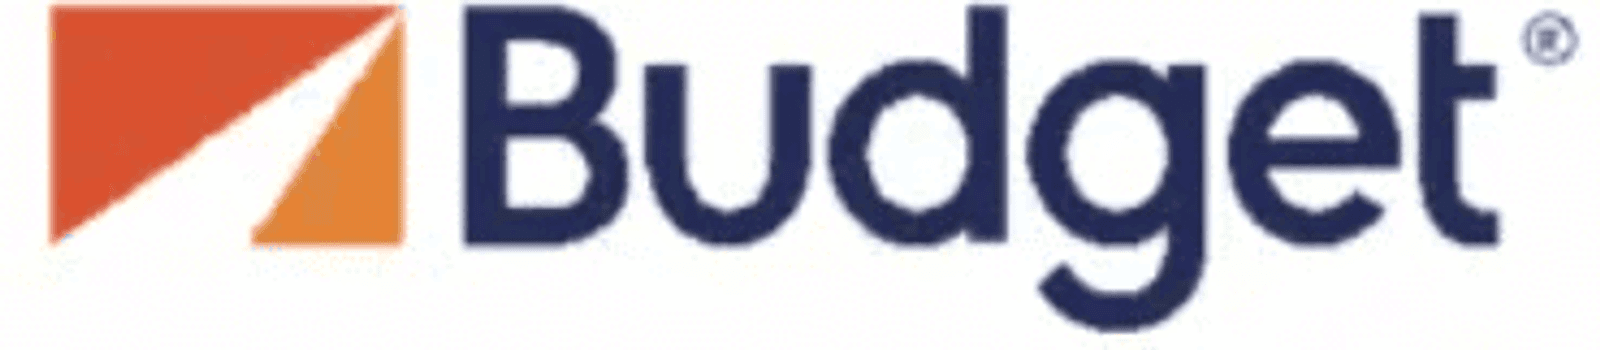 Logo budget